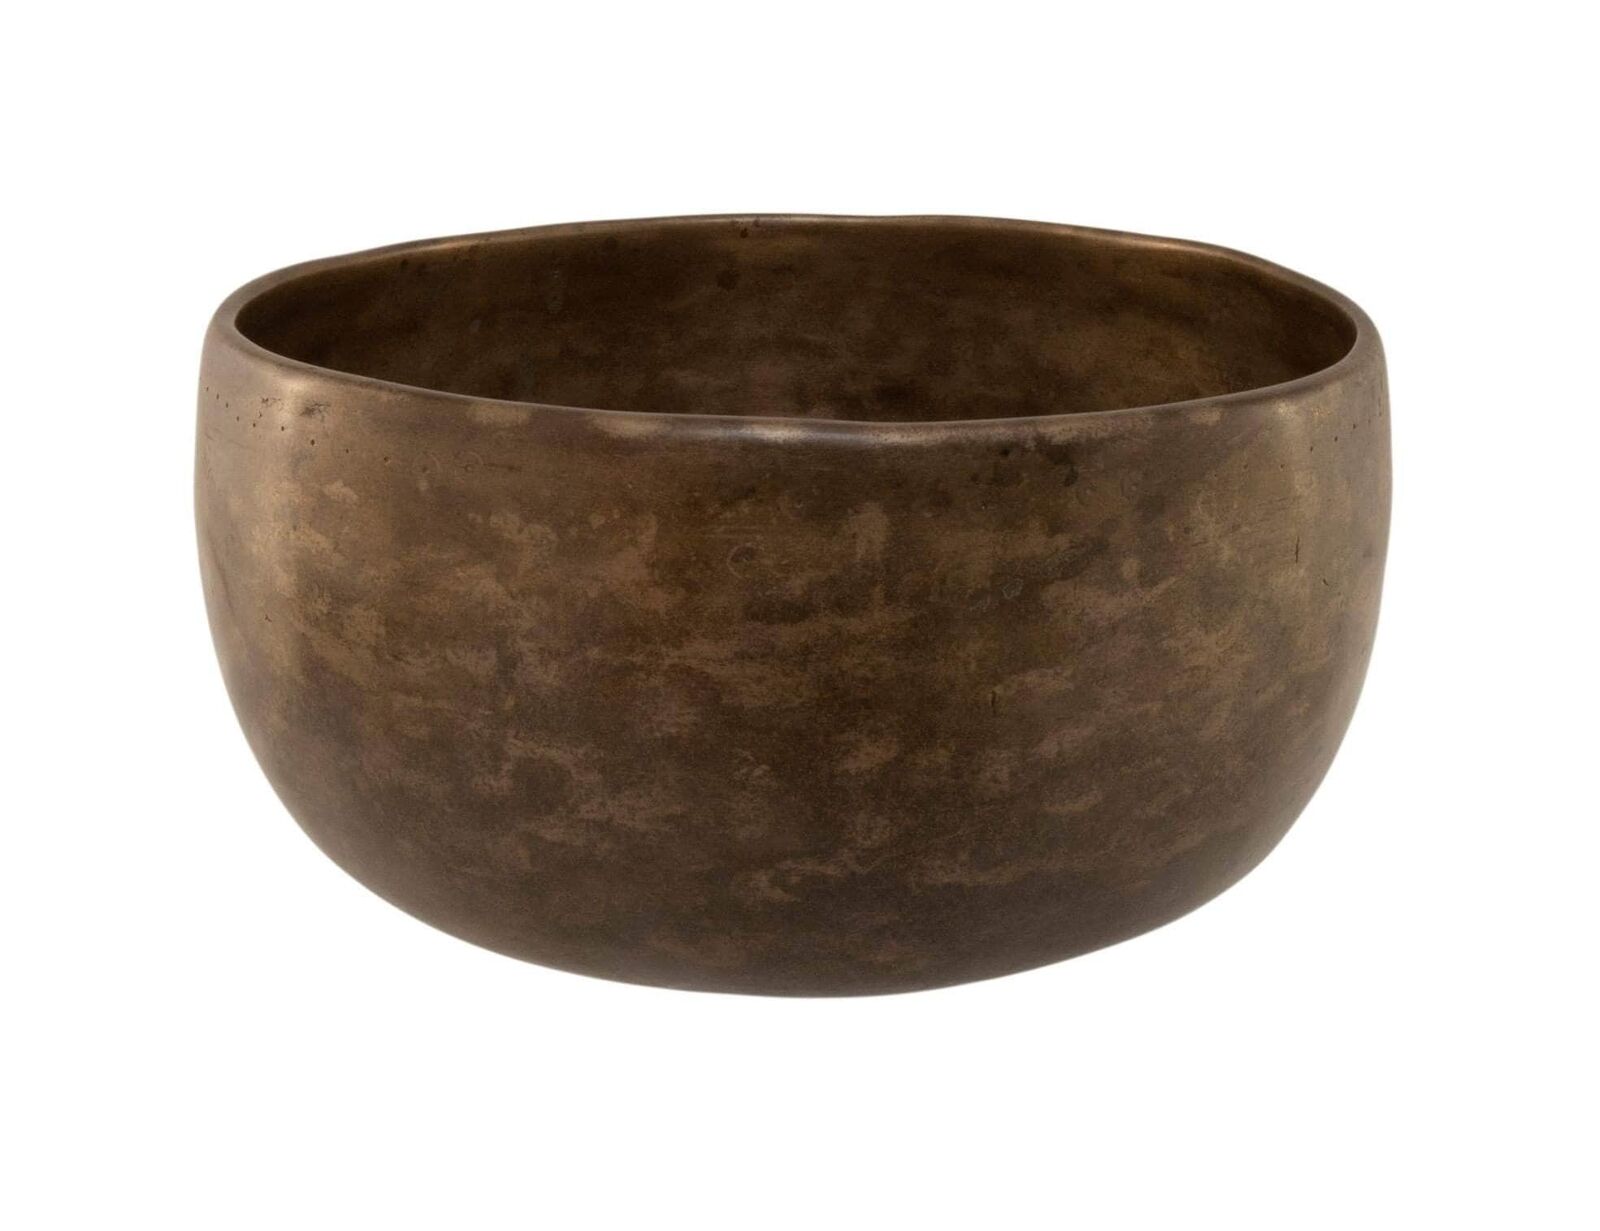 Rare Antique Void Singing Bowl Thadobati Tc#164 7.1/2”x 3.3/4” (19x9.5cm)